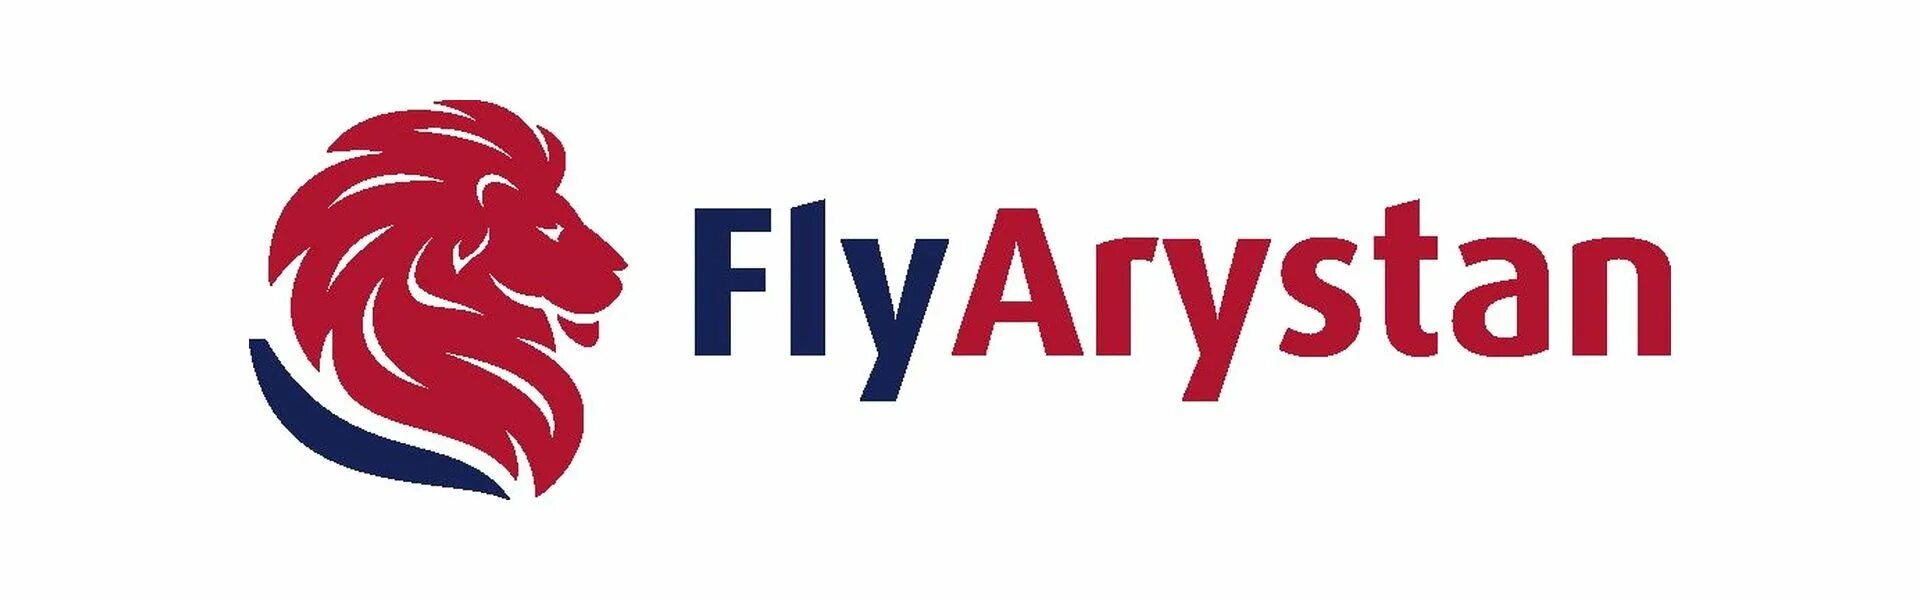 Авиабилеты арыстан купить. Flyarystan лого. Flyarystan авиакомпания. Fly Arystan logo. Авиалинии логотипы казахстанские.